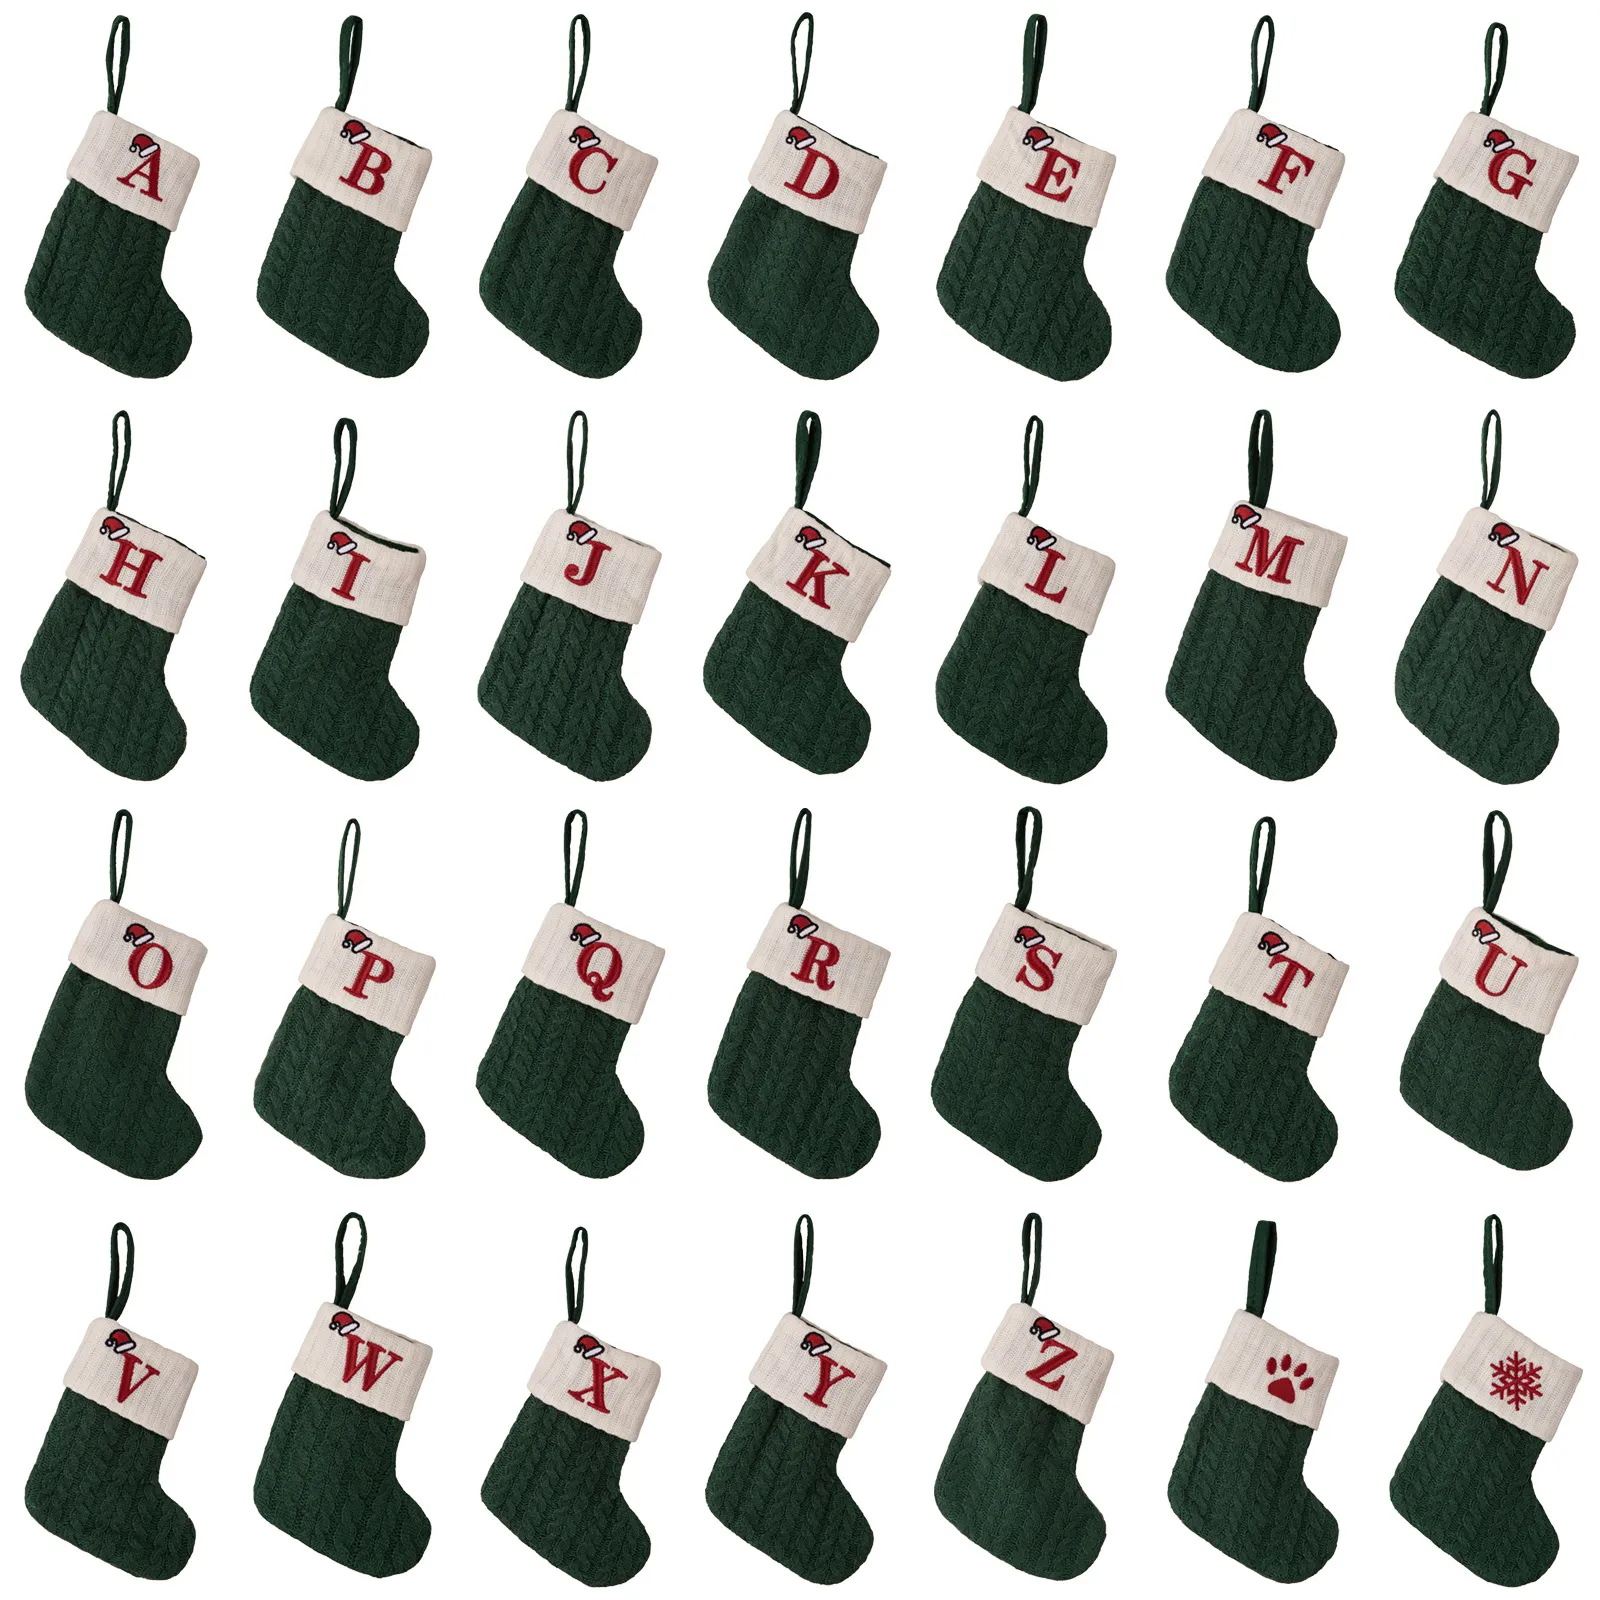 Chaussettes de noël vertes tricotées, flocon de neige, bas de lettres, décoration de noël pour la maison, ornement d'arbre de noël, cadeaux W23-395